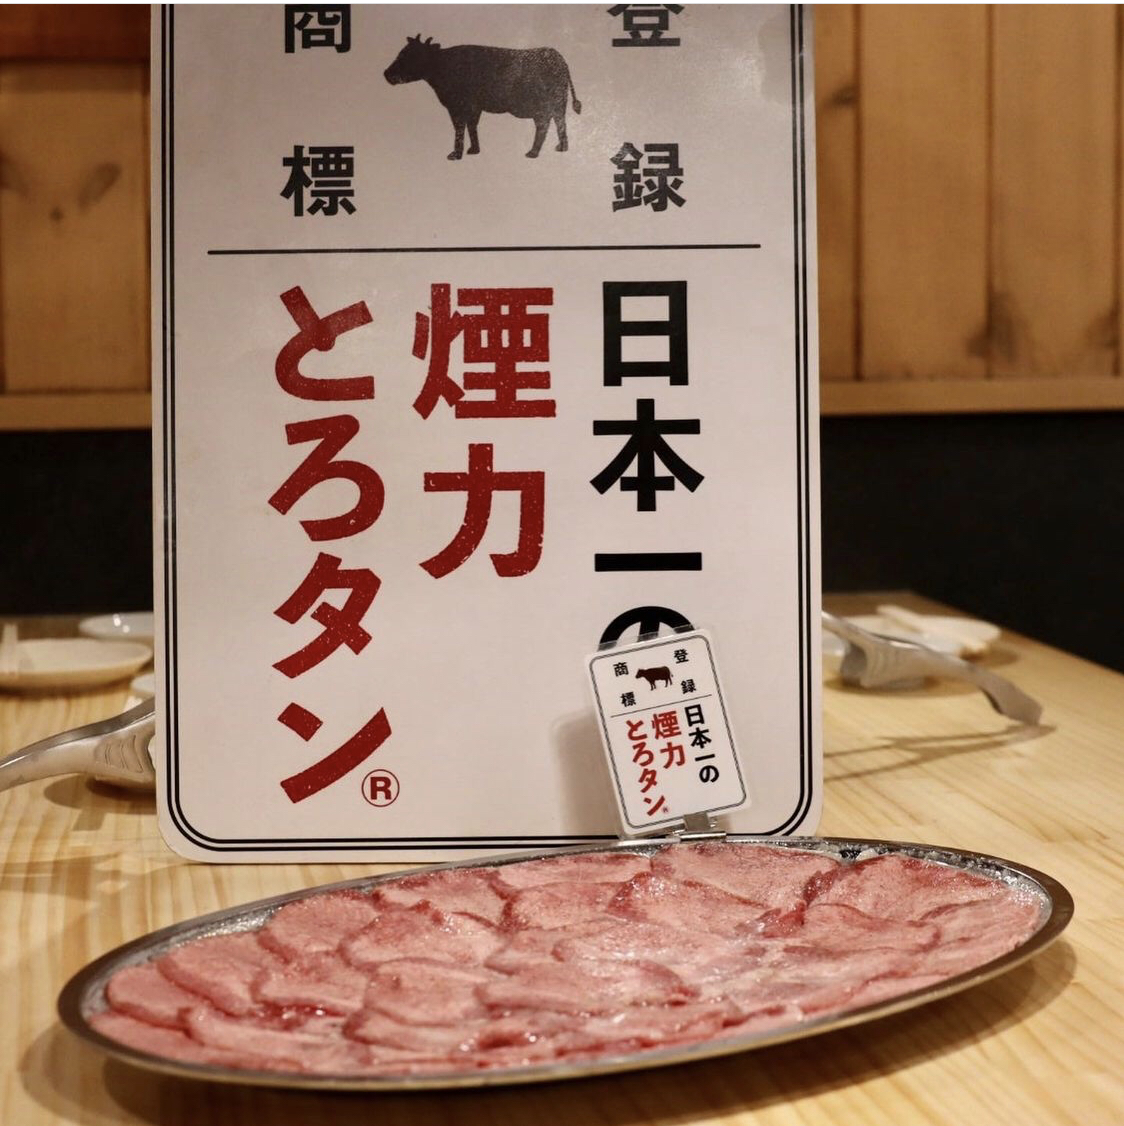 还可以吃烤寿司！13道菜品+120分钟无限畅饮的丰盛宴会套餐3,980日元